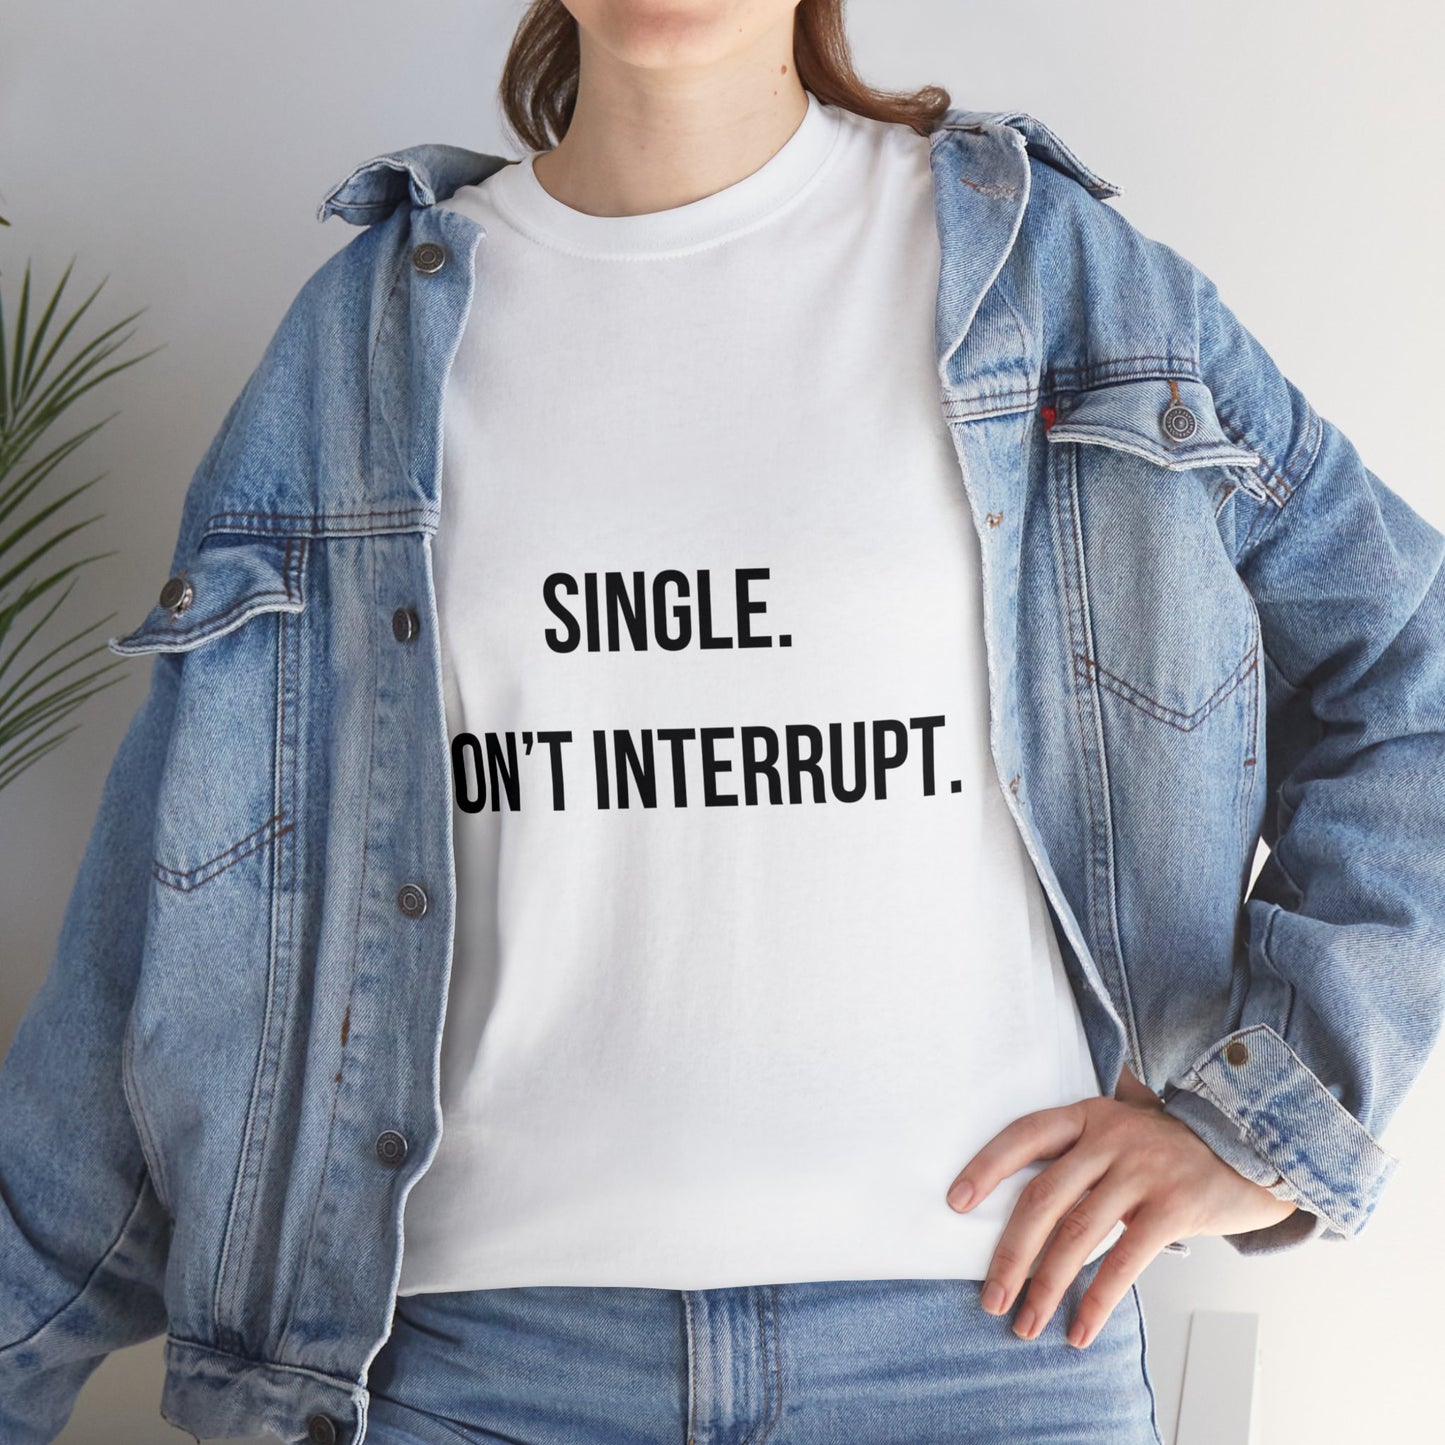 Unisex Heavy Cotton Tee: "Single. Don't Interrupt."